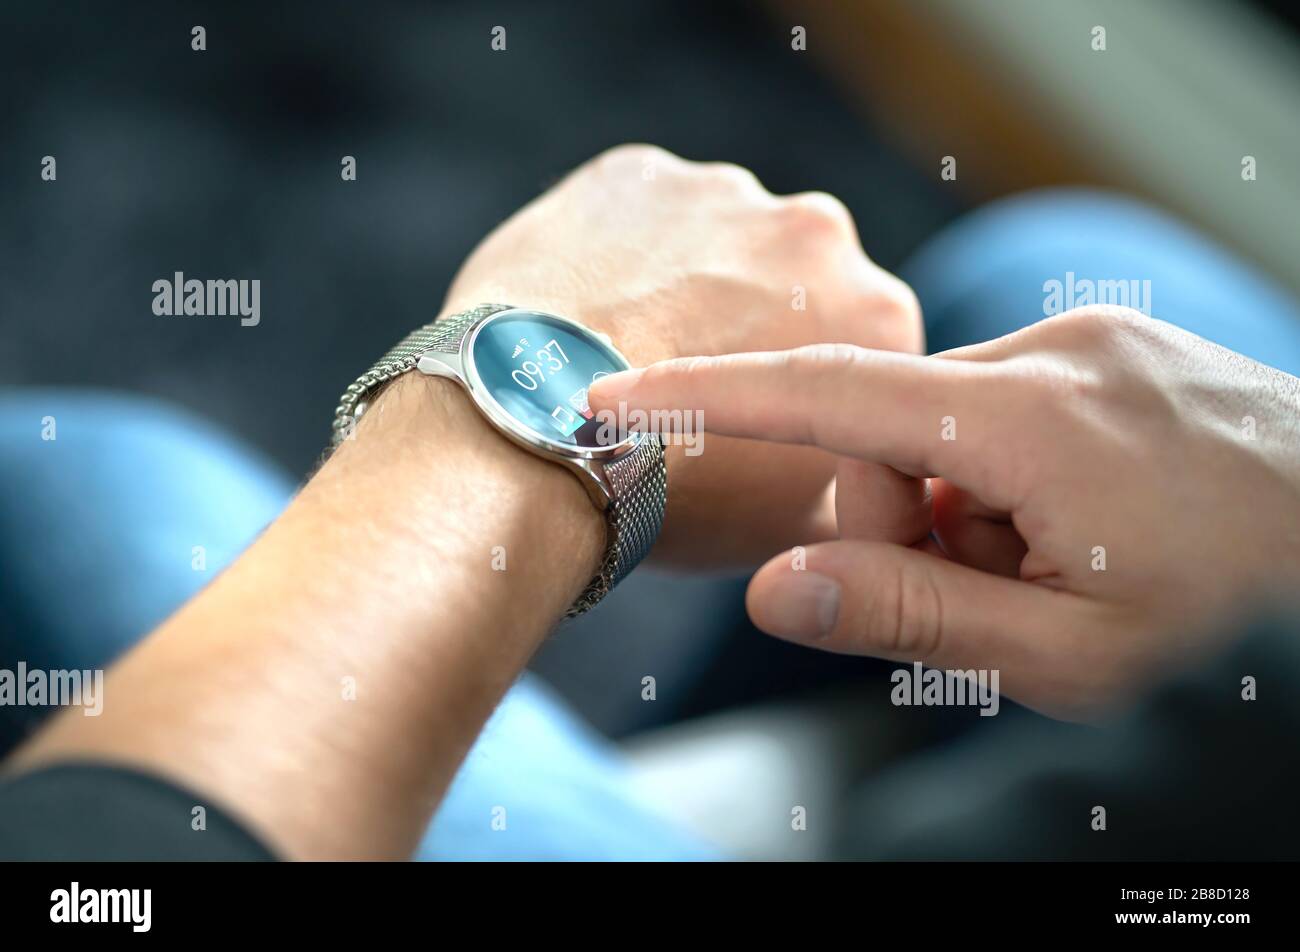 Homme touchant l'écran de la montre intelligente pour ouvrir la notification et lire le message. Appareil mobile hybride portable, gadget et tracker d'activité au poignet. Banque D'Images